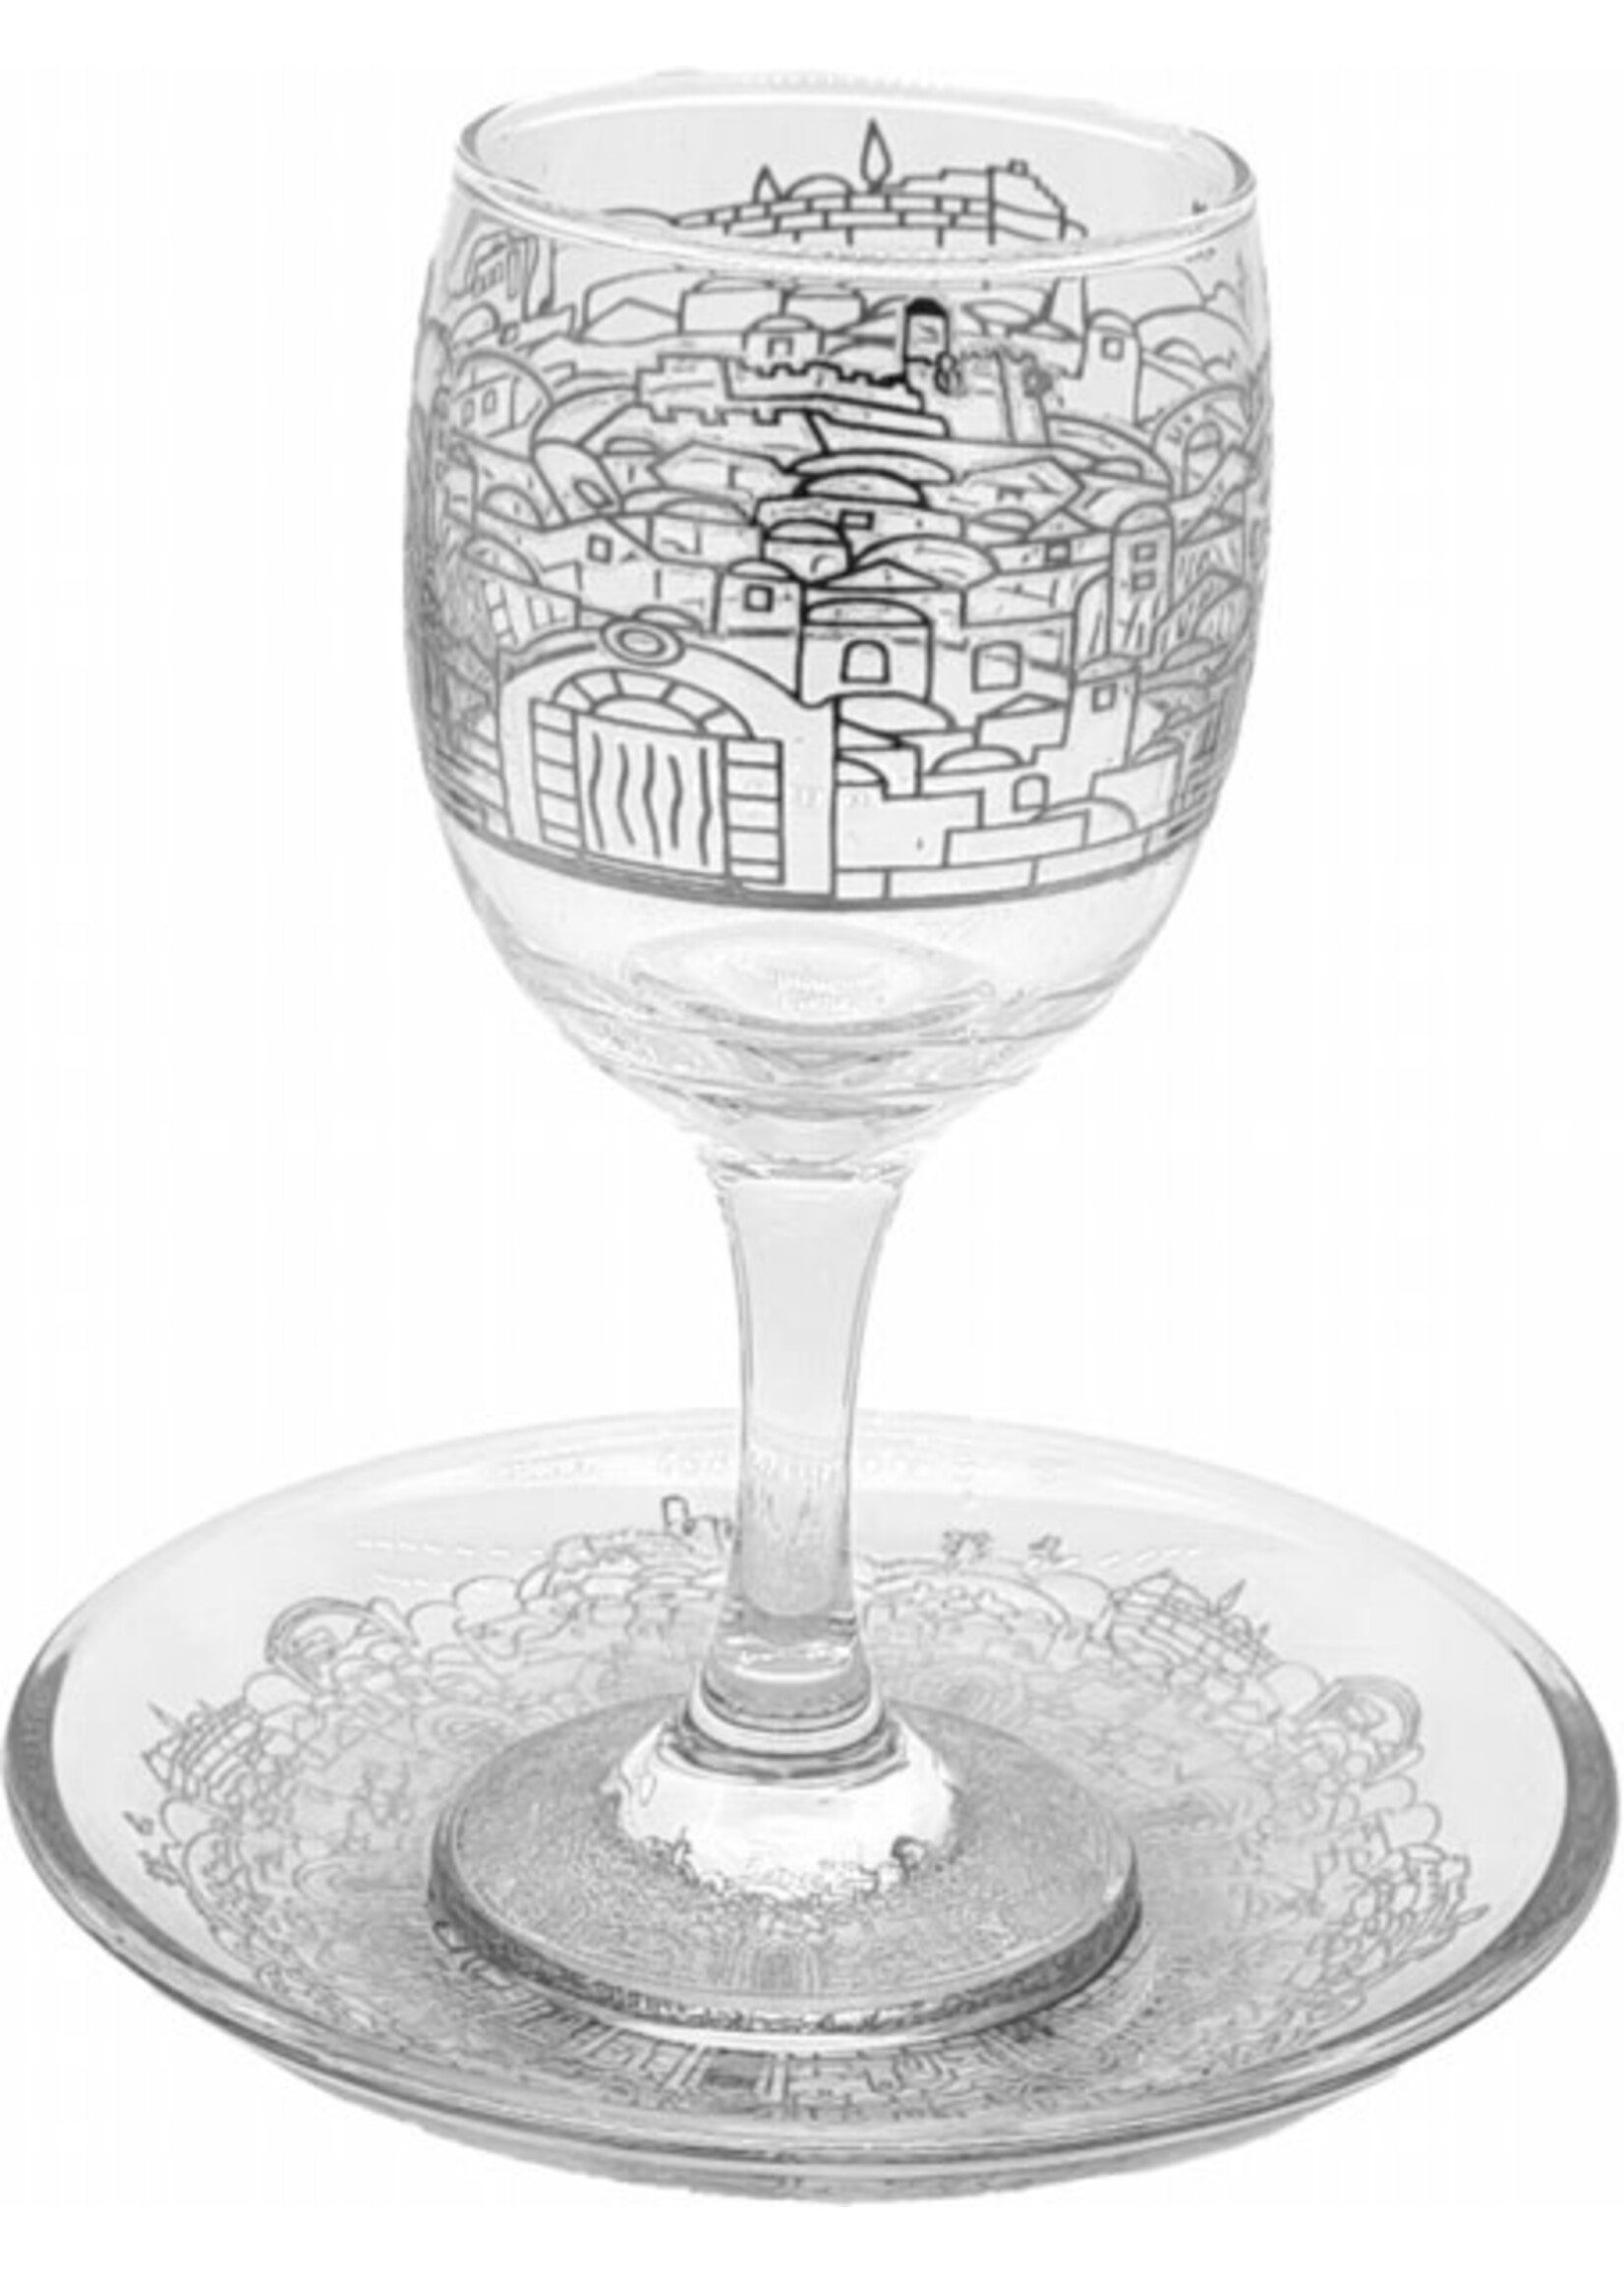 KIDDUSH CUP STEM GLASS - JERUSALEM SILVER